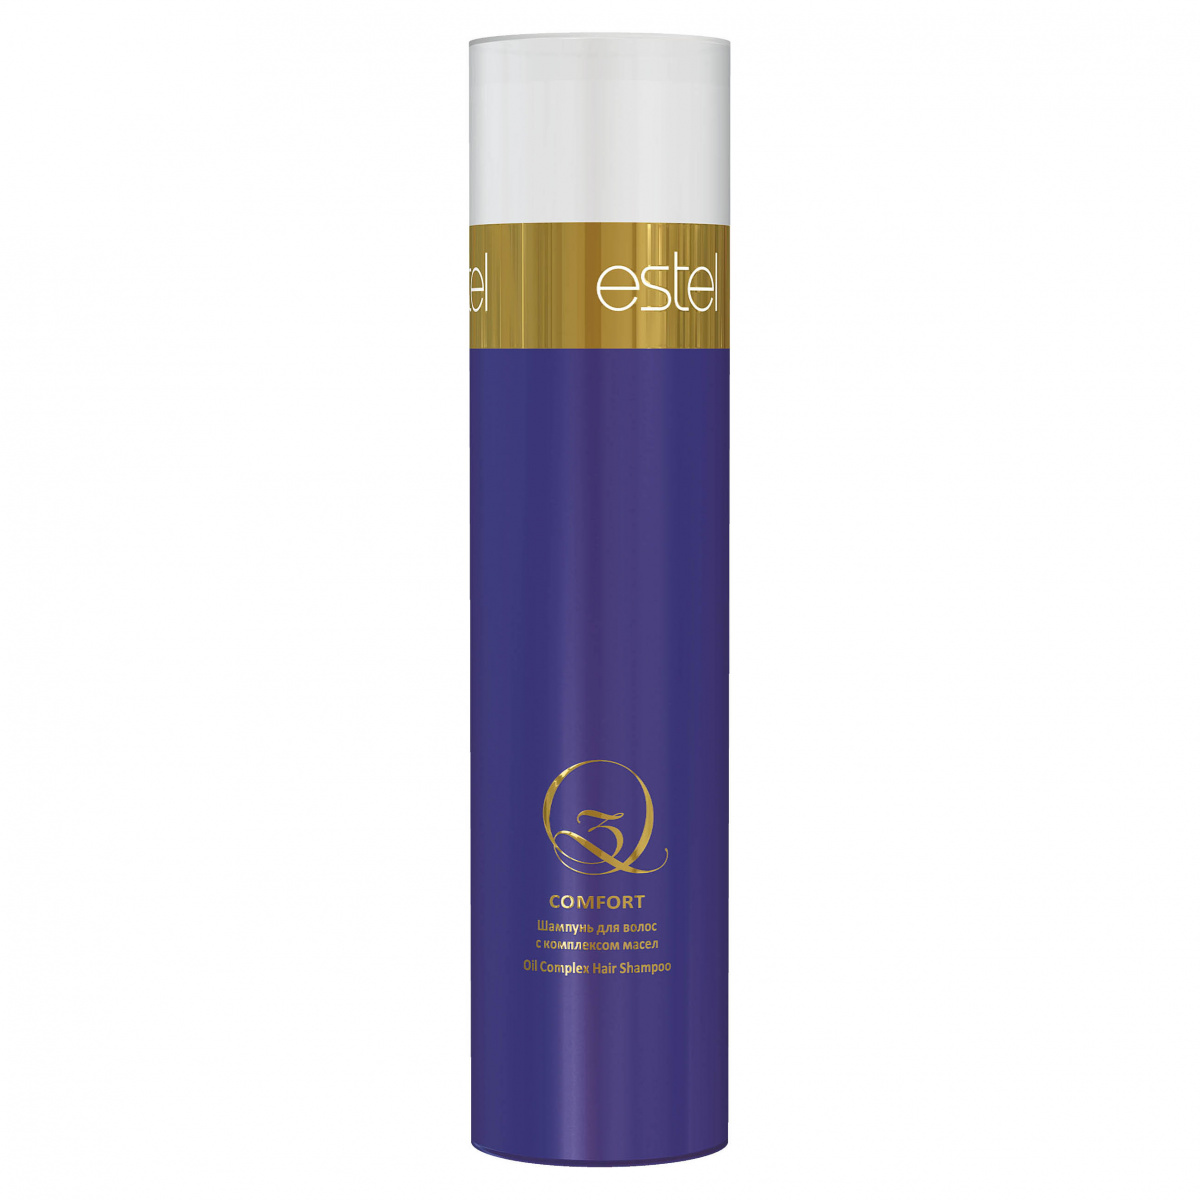 Estel Q3 Comfort - Шампунь  для волос с комплексом масел 250 мл Estel Professional (Россия) купить по цене 500 руб.